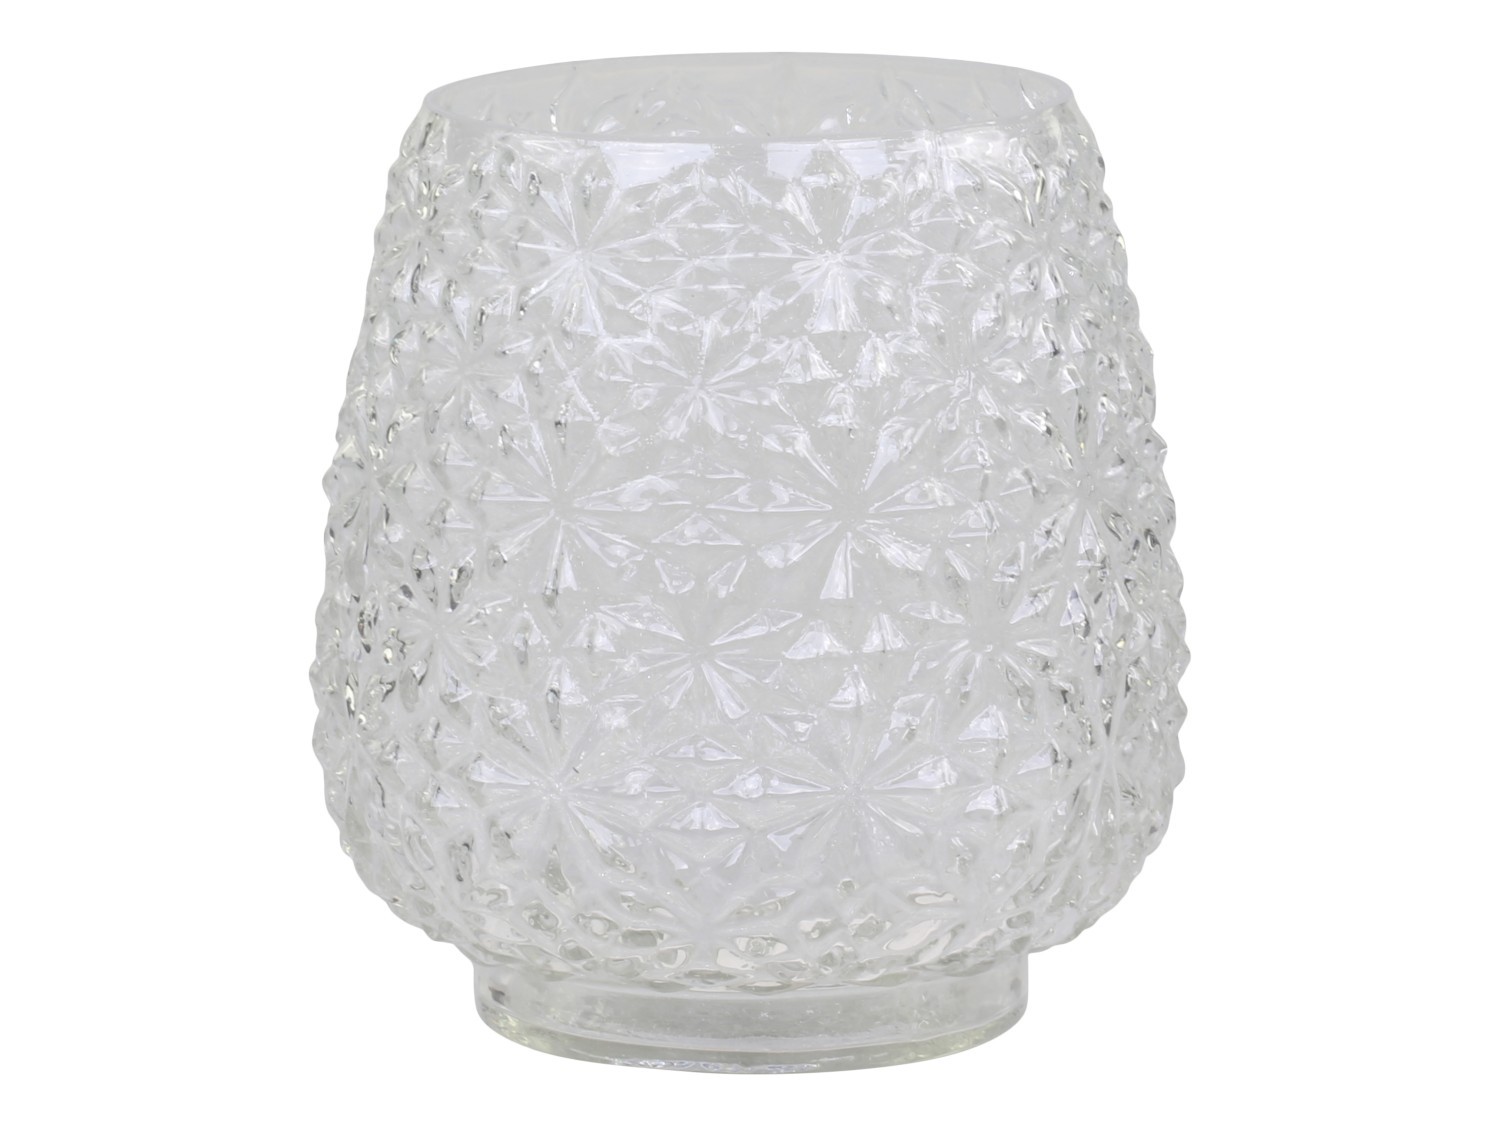 Transparentní skleněná dekorační váza / svícen Drea - Ø 14*15cm Chic Antique